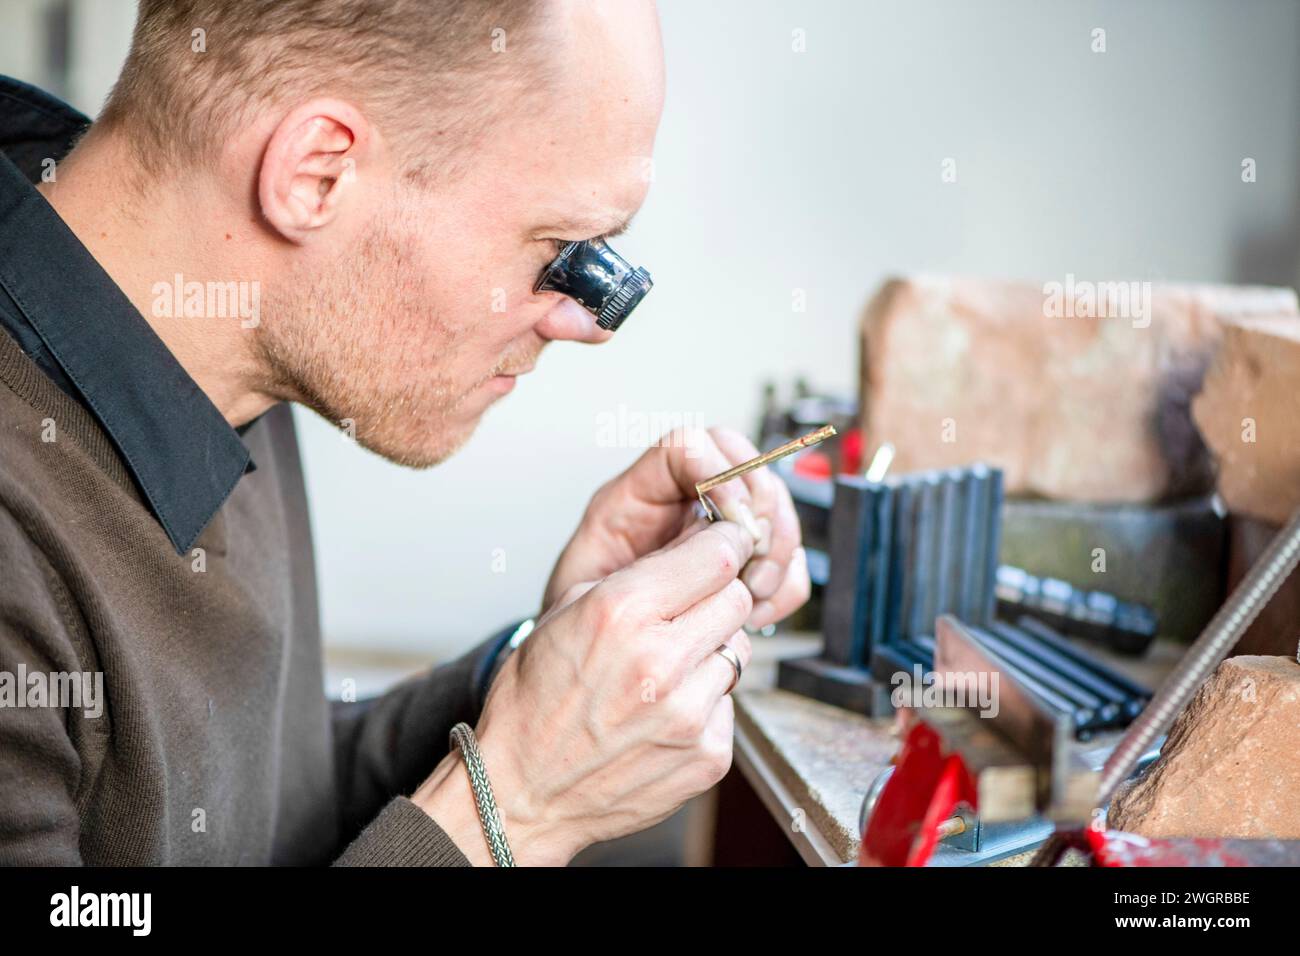 Uhrenmacher repariert eine klassische Uhr, einen authentischen Arbeitsplatz. Verwendung eines Monokels und kleiner, winziger Werkzeuge für Reparaturen Stockfoto